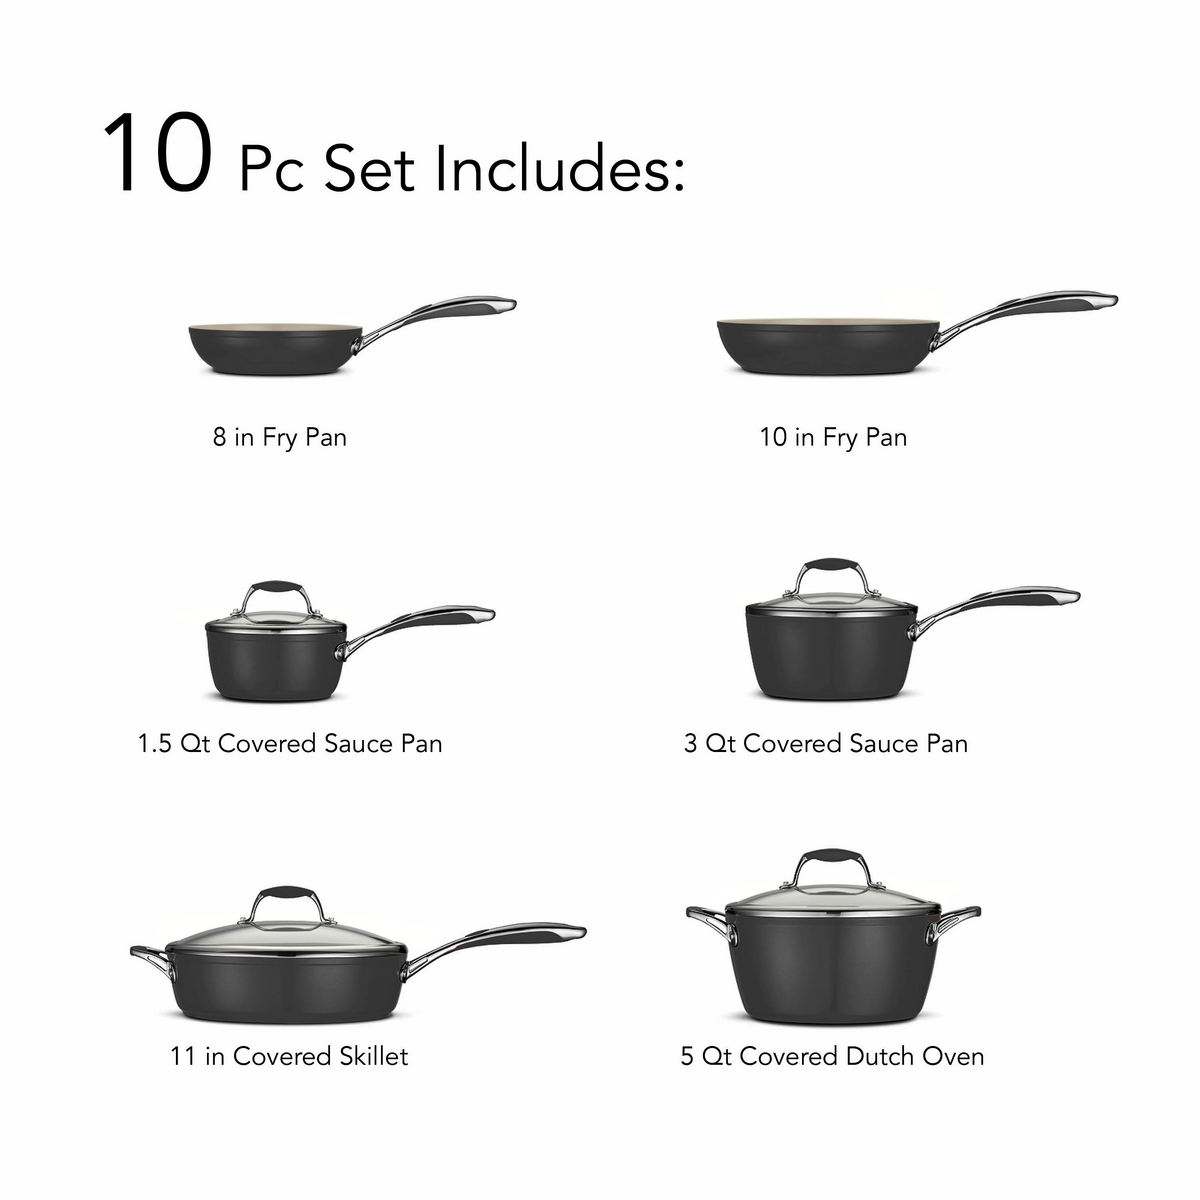 Tramontina Gourmet Ceramica Deluxe 10-Piece Cookware Set, Metallic Black